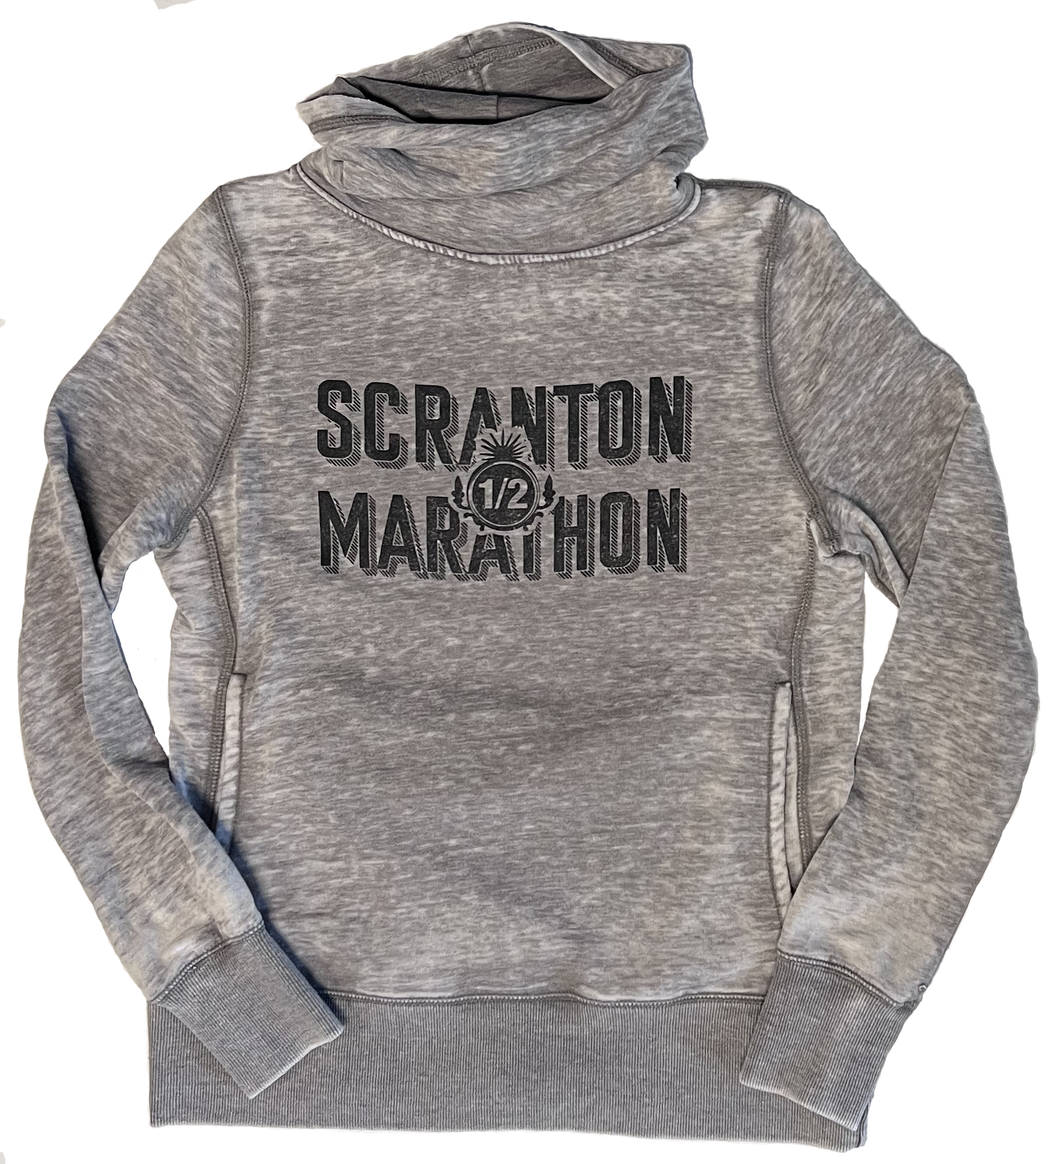 Scranton Half Cowl Neck Sweatshirt